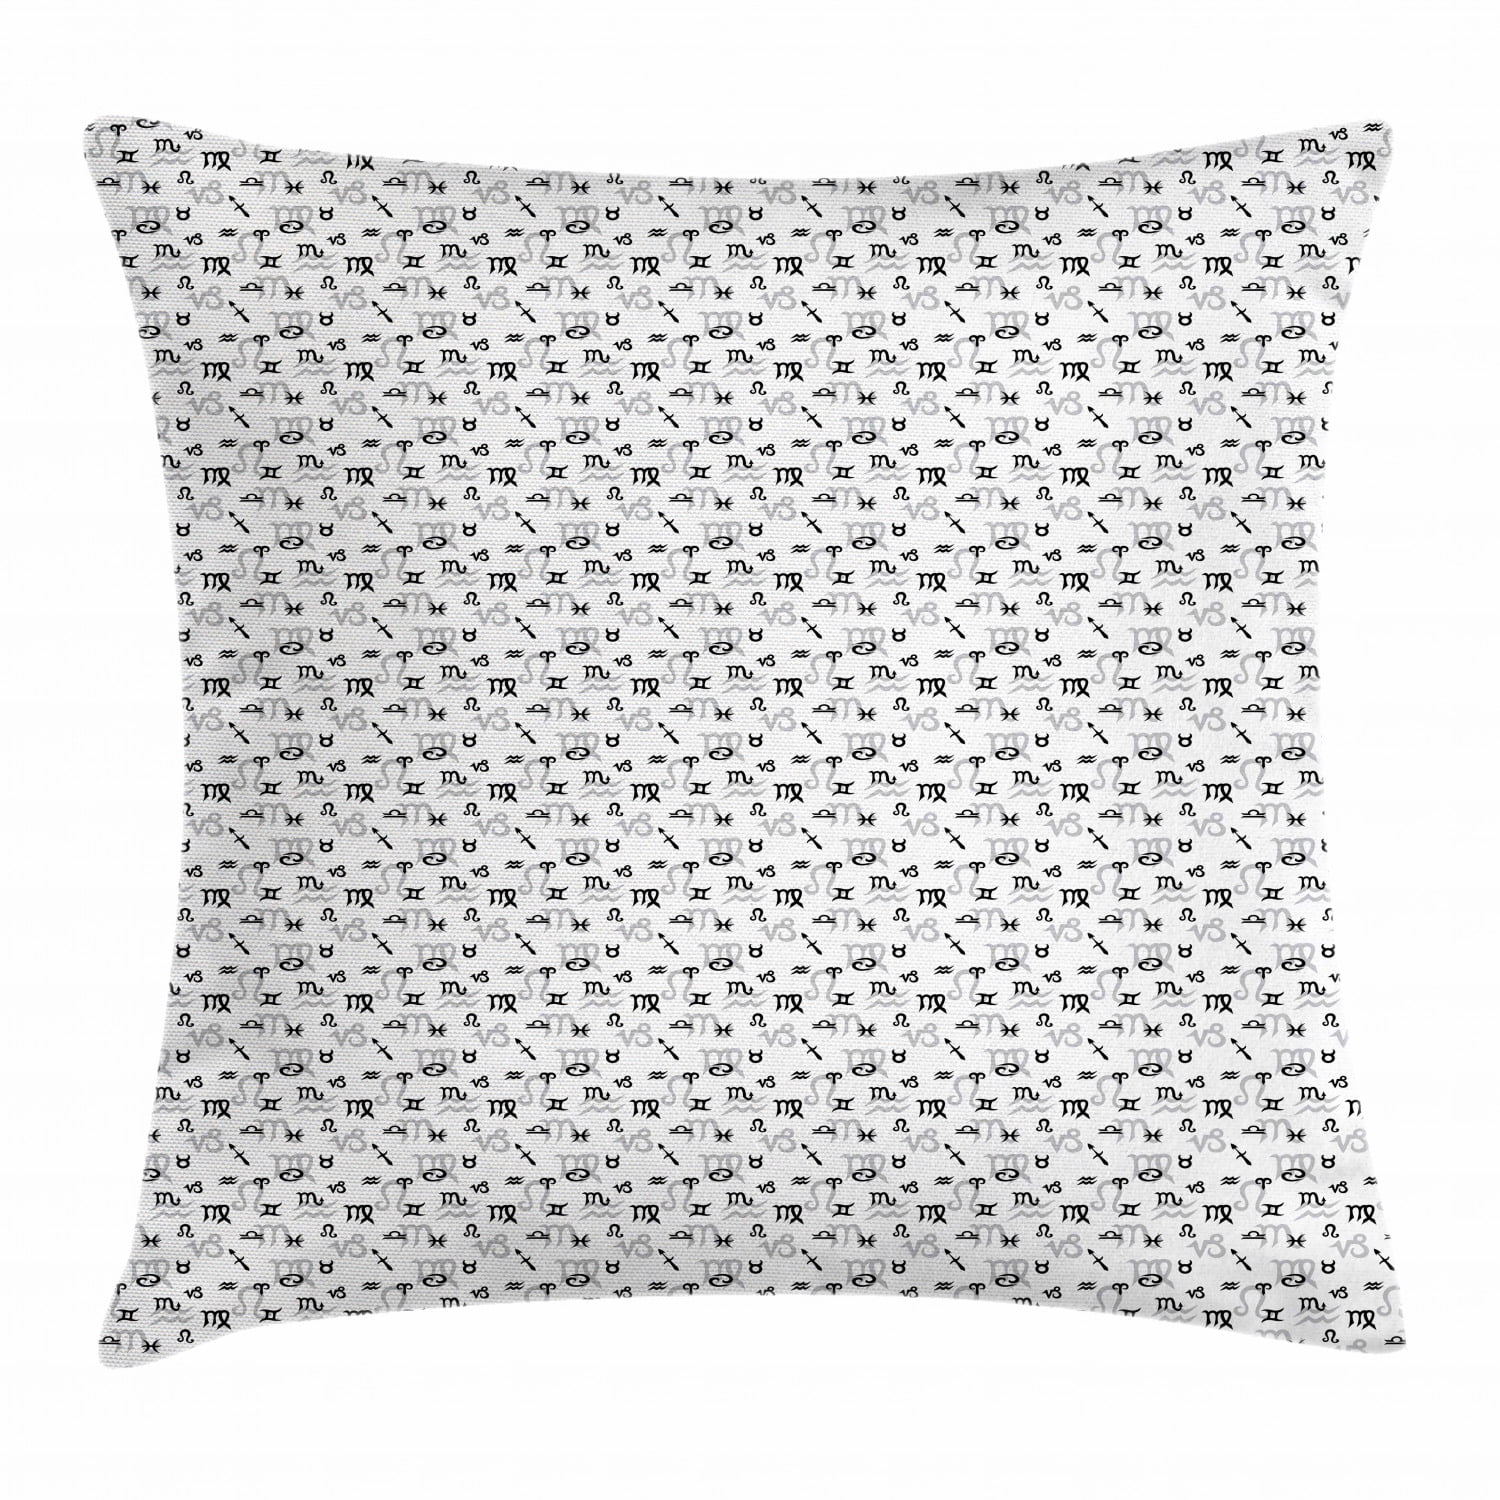 Aquarius Zodiac Pillow Case Sofa Cushion Cover